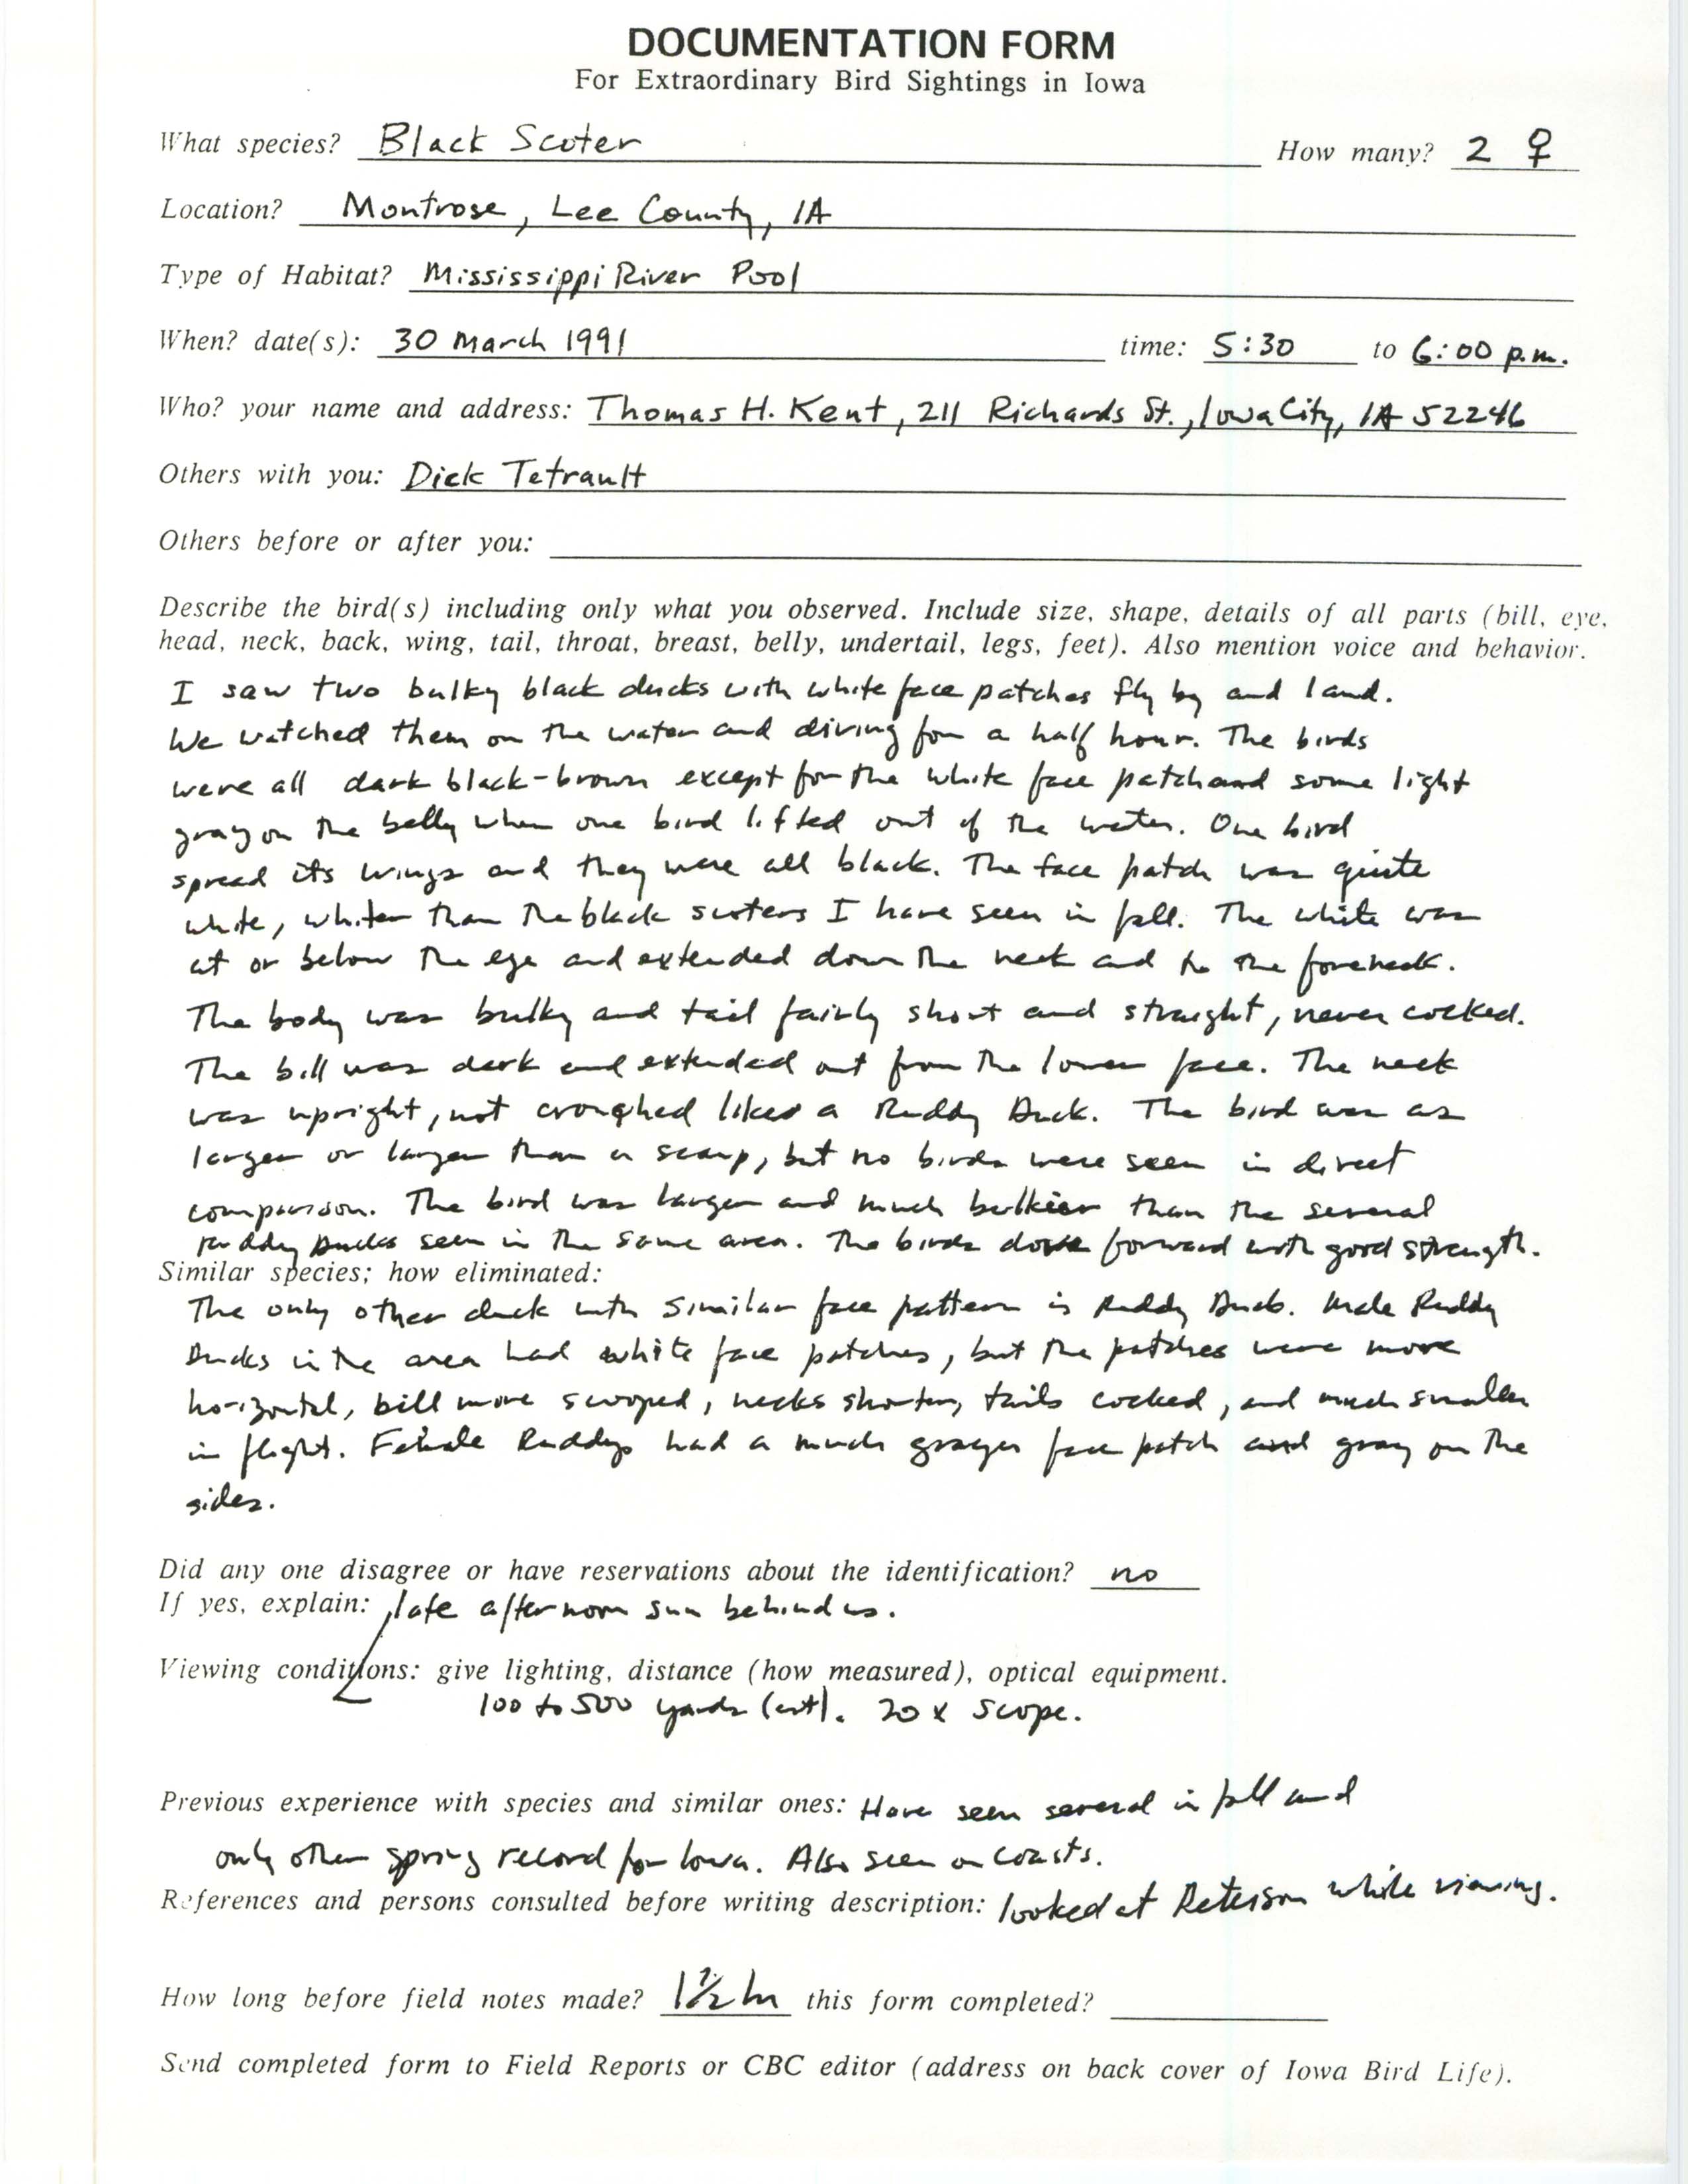 Rare bird documentation form for Black Scoter at Montrose, 1991